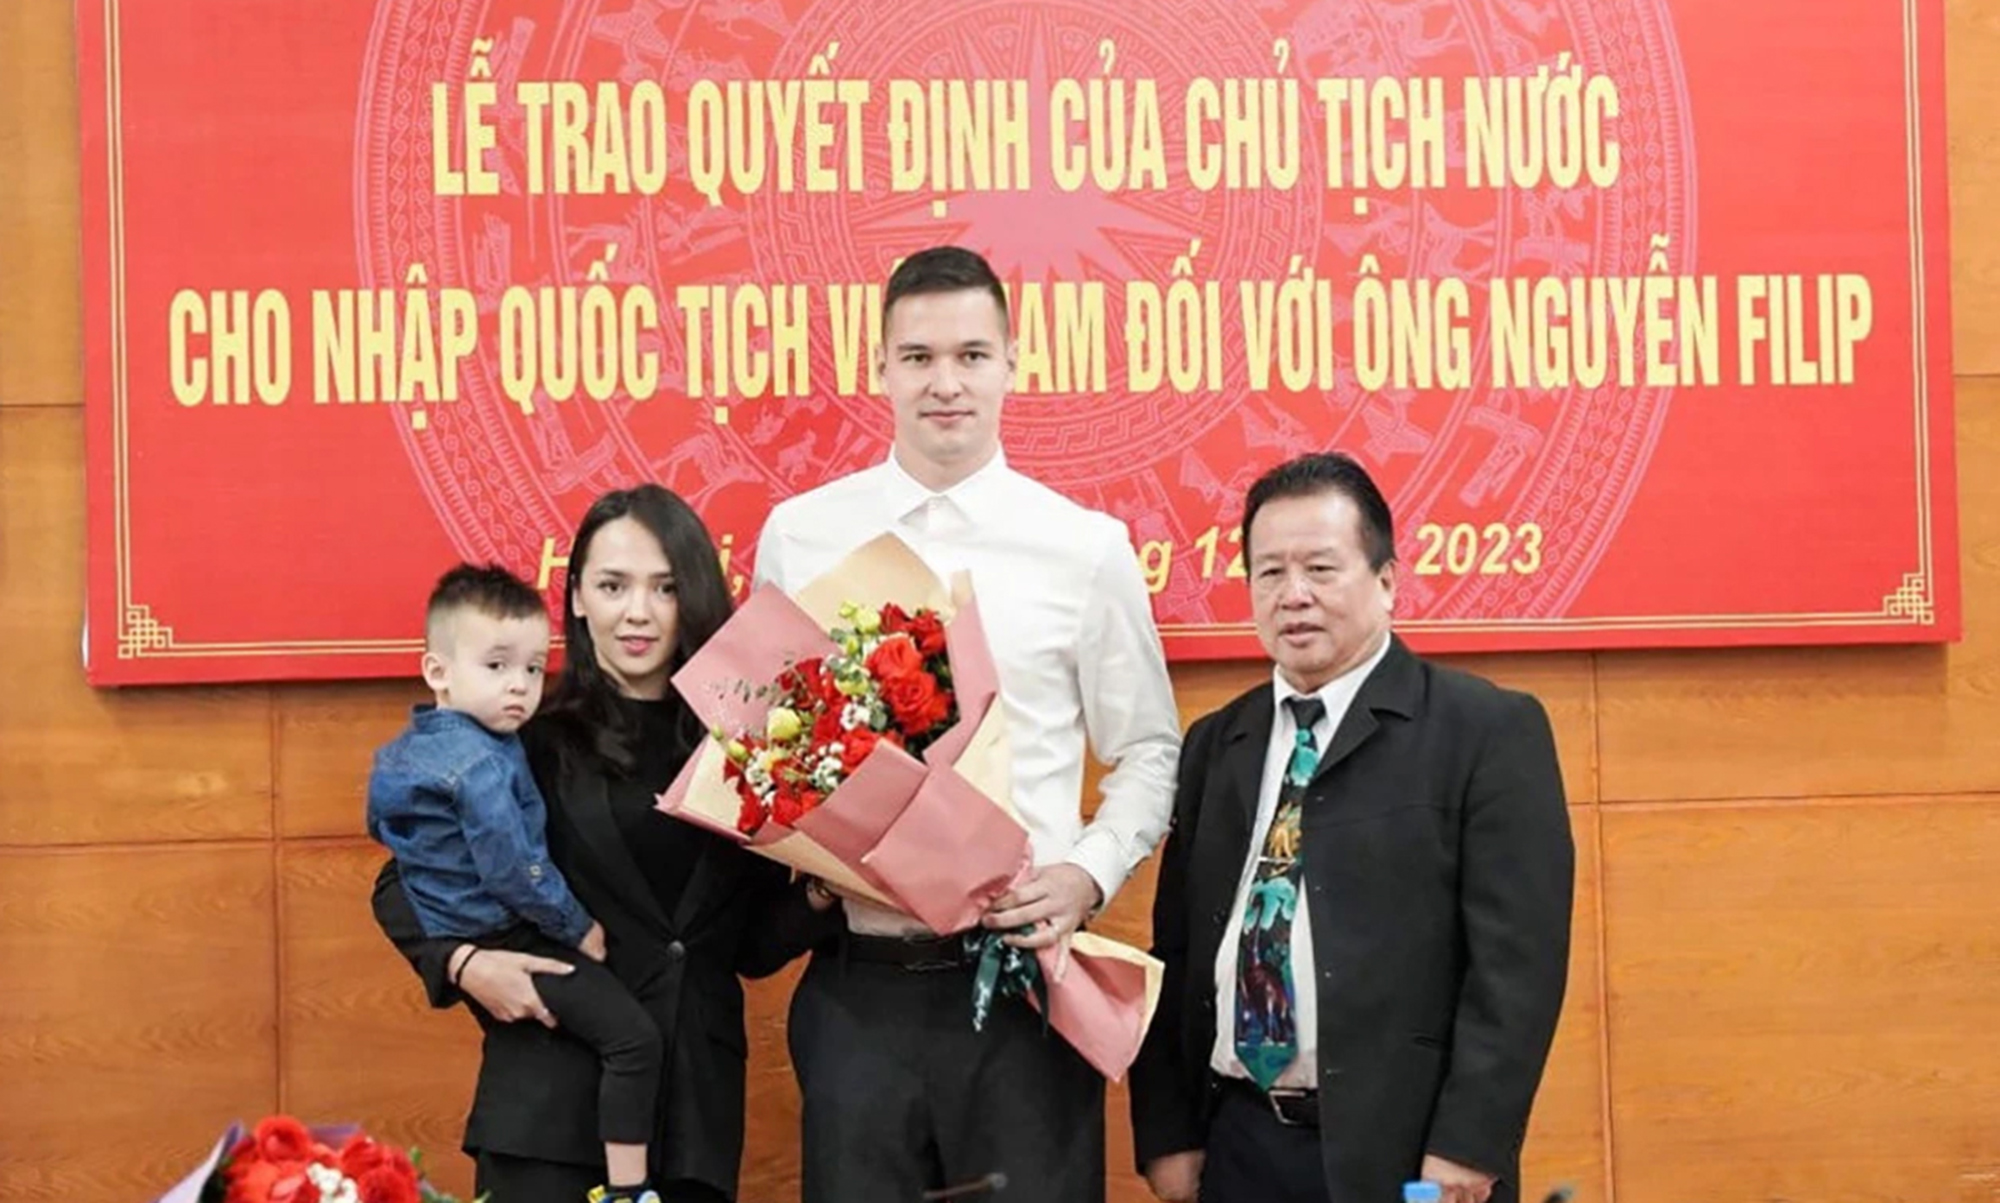 Nguyễn Filip kể hành trình 9 năm nhập quốc tịch Việt Nam- Ảnh 1.